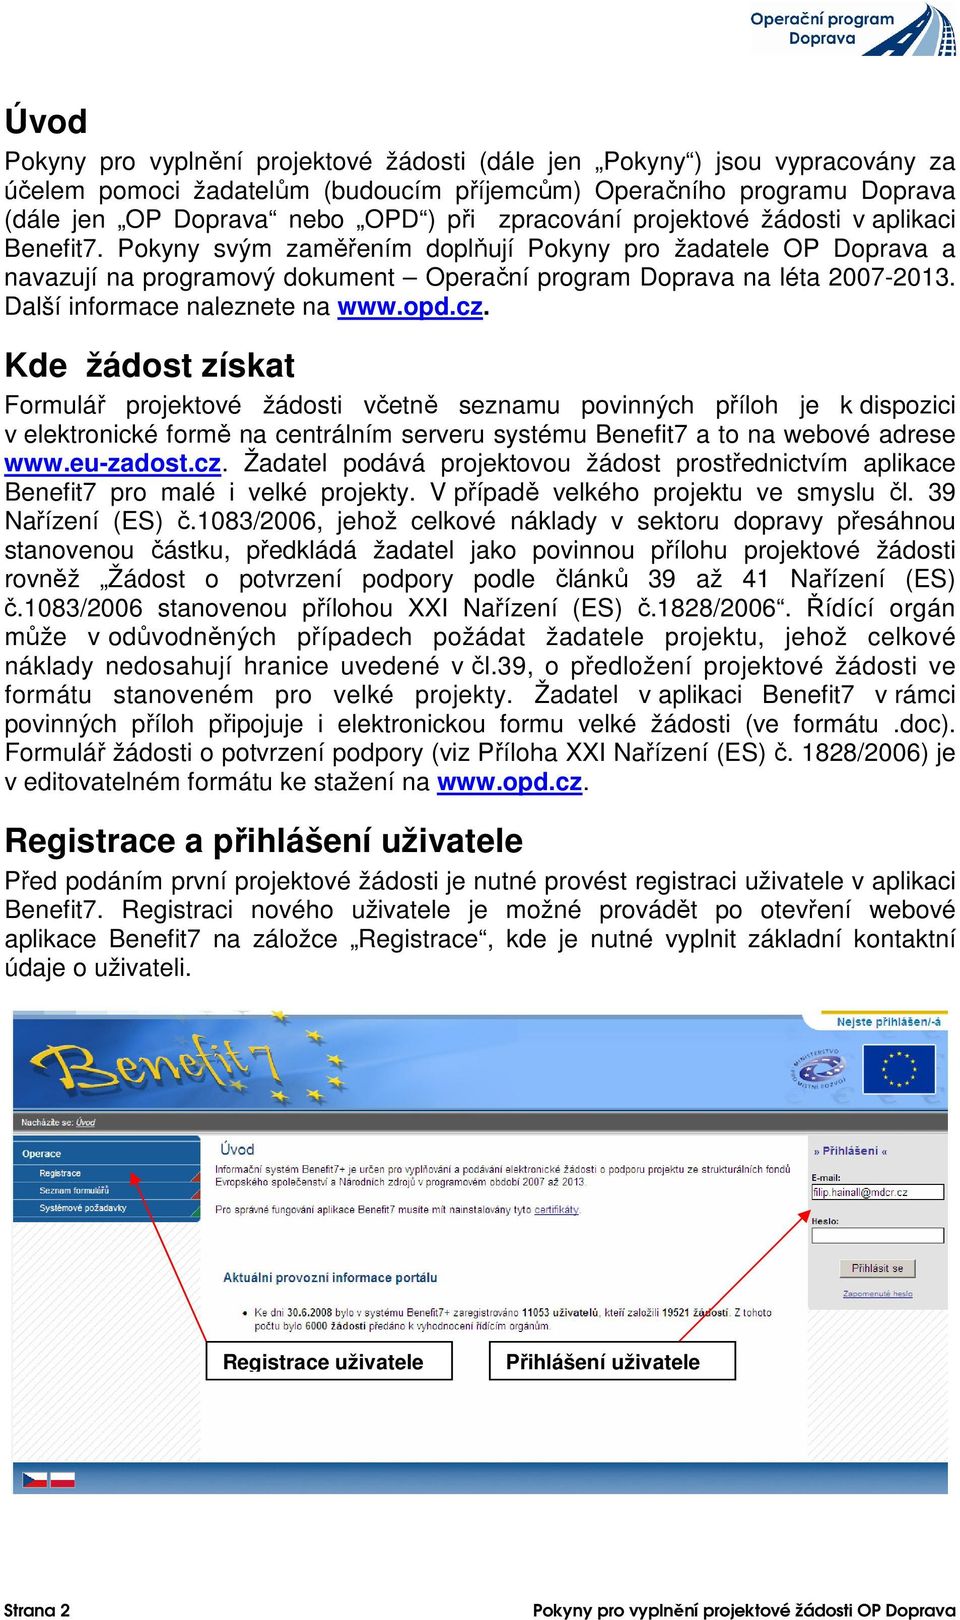 Další informace naleznete na www.opd.cz.